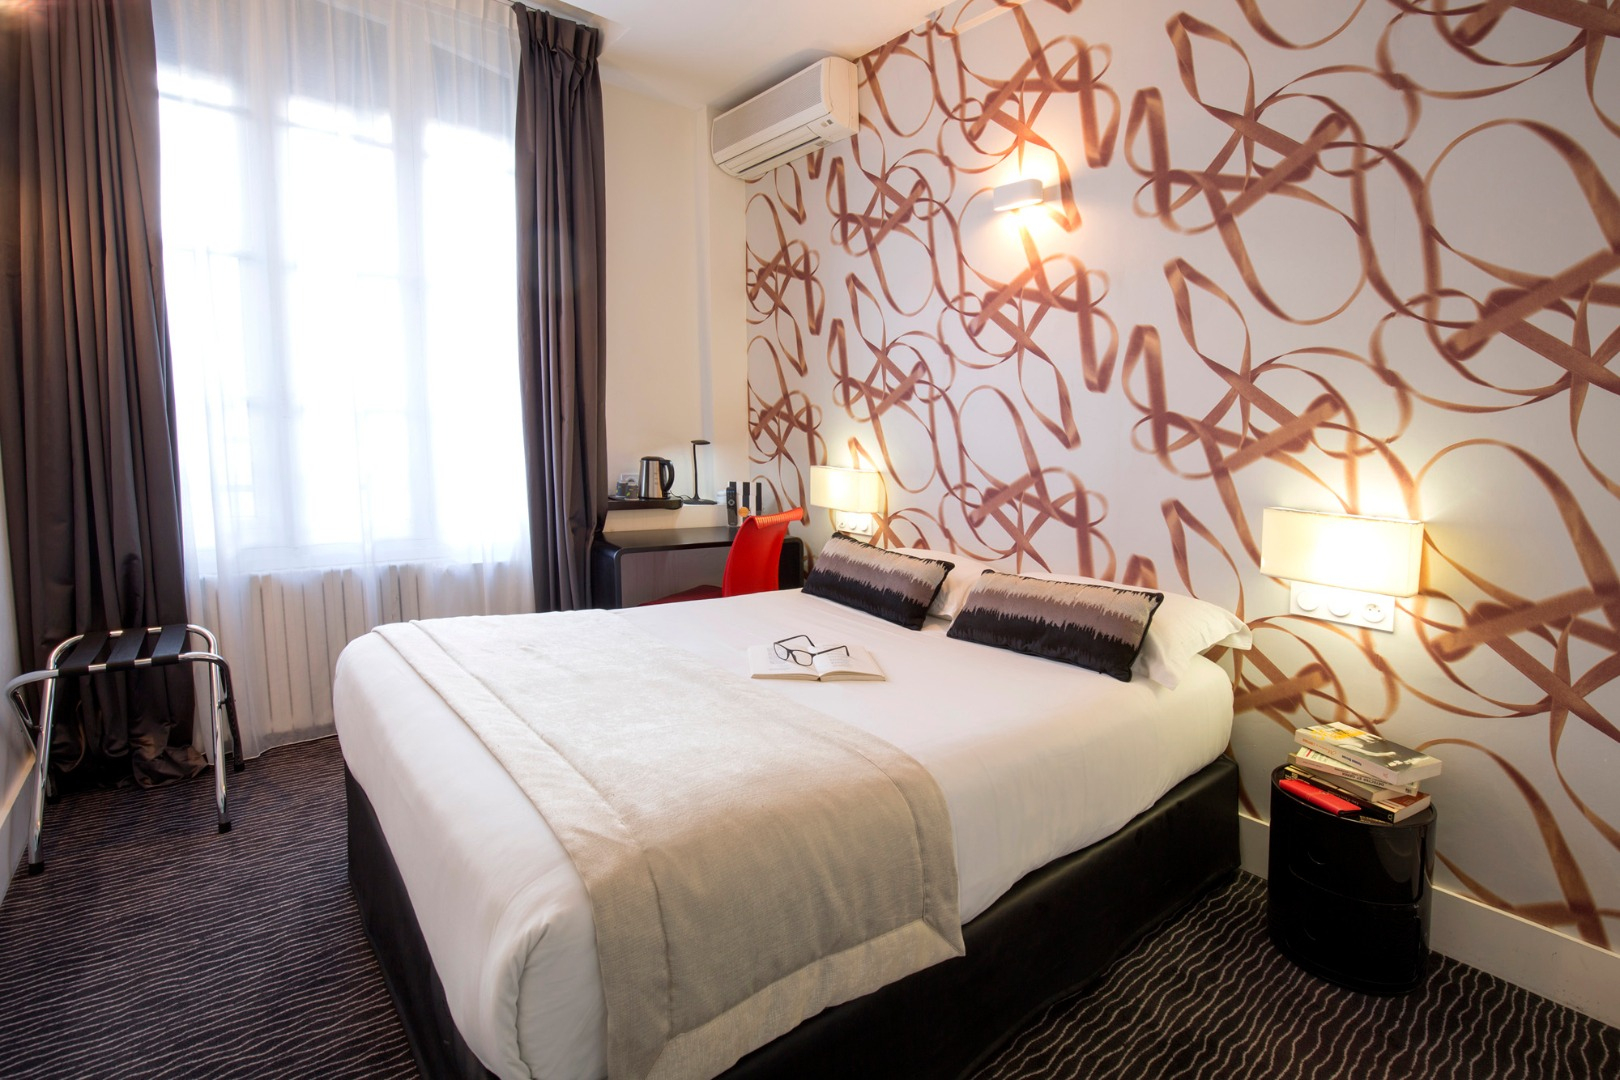 Chambre Classique | Hotel Raymond 4 Toulouse à Hotel Les Bains Douches Toulouse